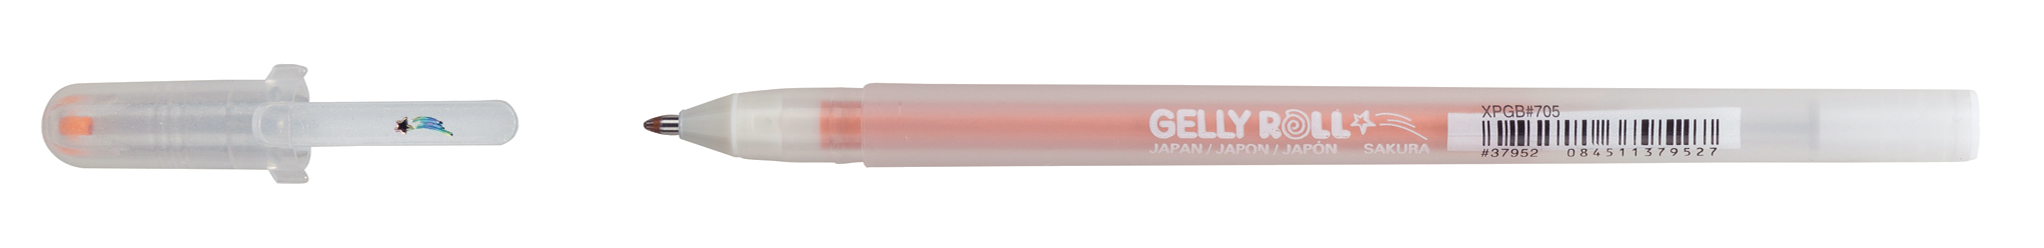 SAKURA Gelly Roll 0.5mm XPGB705 Stardust Kupfer Glitter